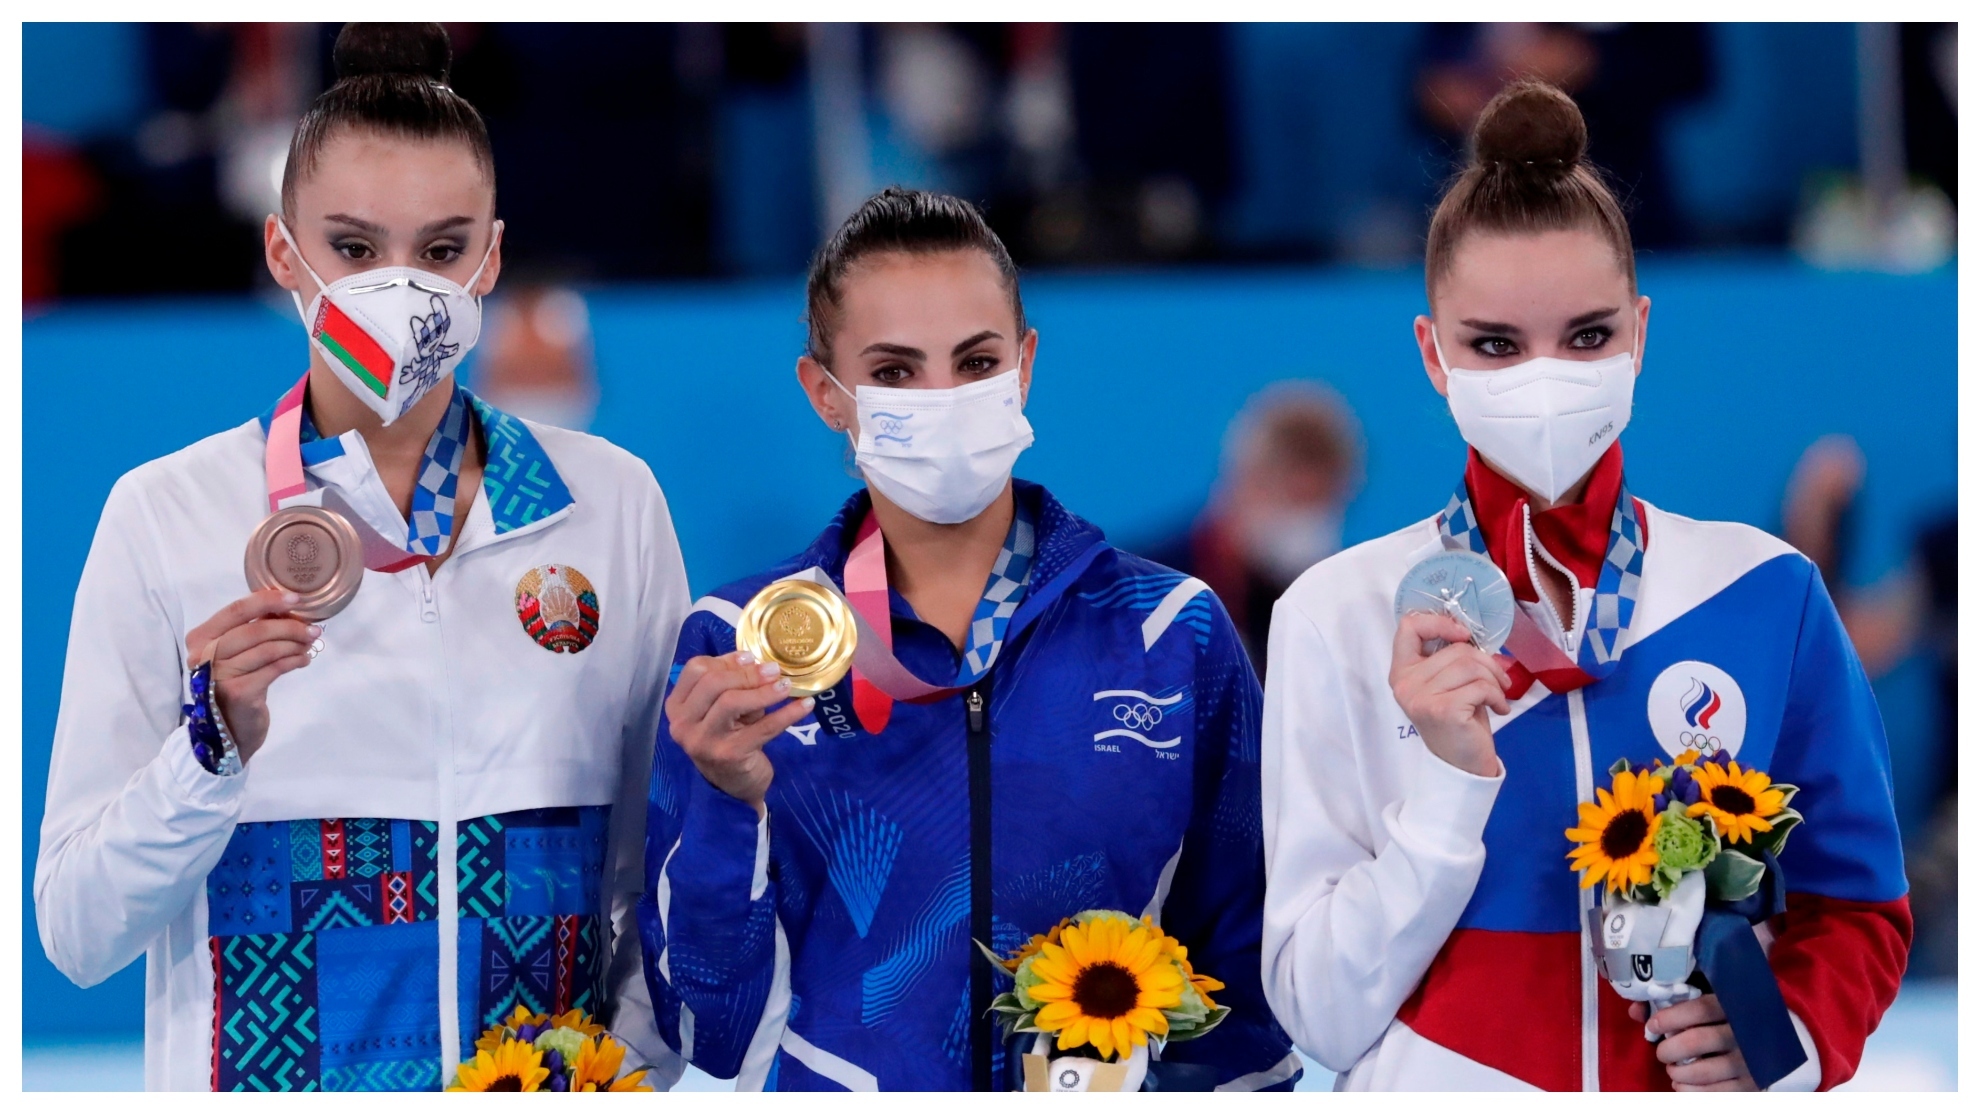 El podio indiviudal de Tokyo, Alina Harnasko (Bielorrusia), Linoy Ashram (Israel) y Dina Averina (Rusia) no competirá en los Europeos